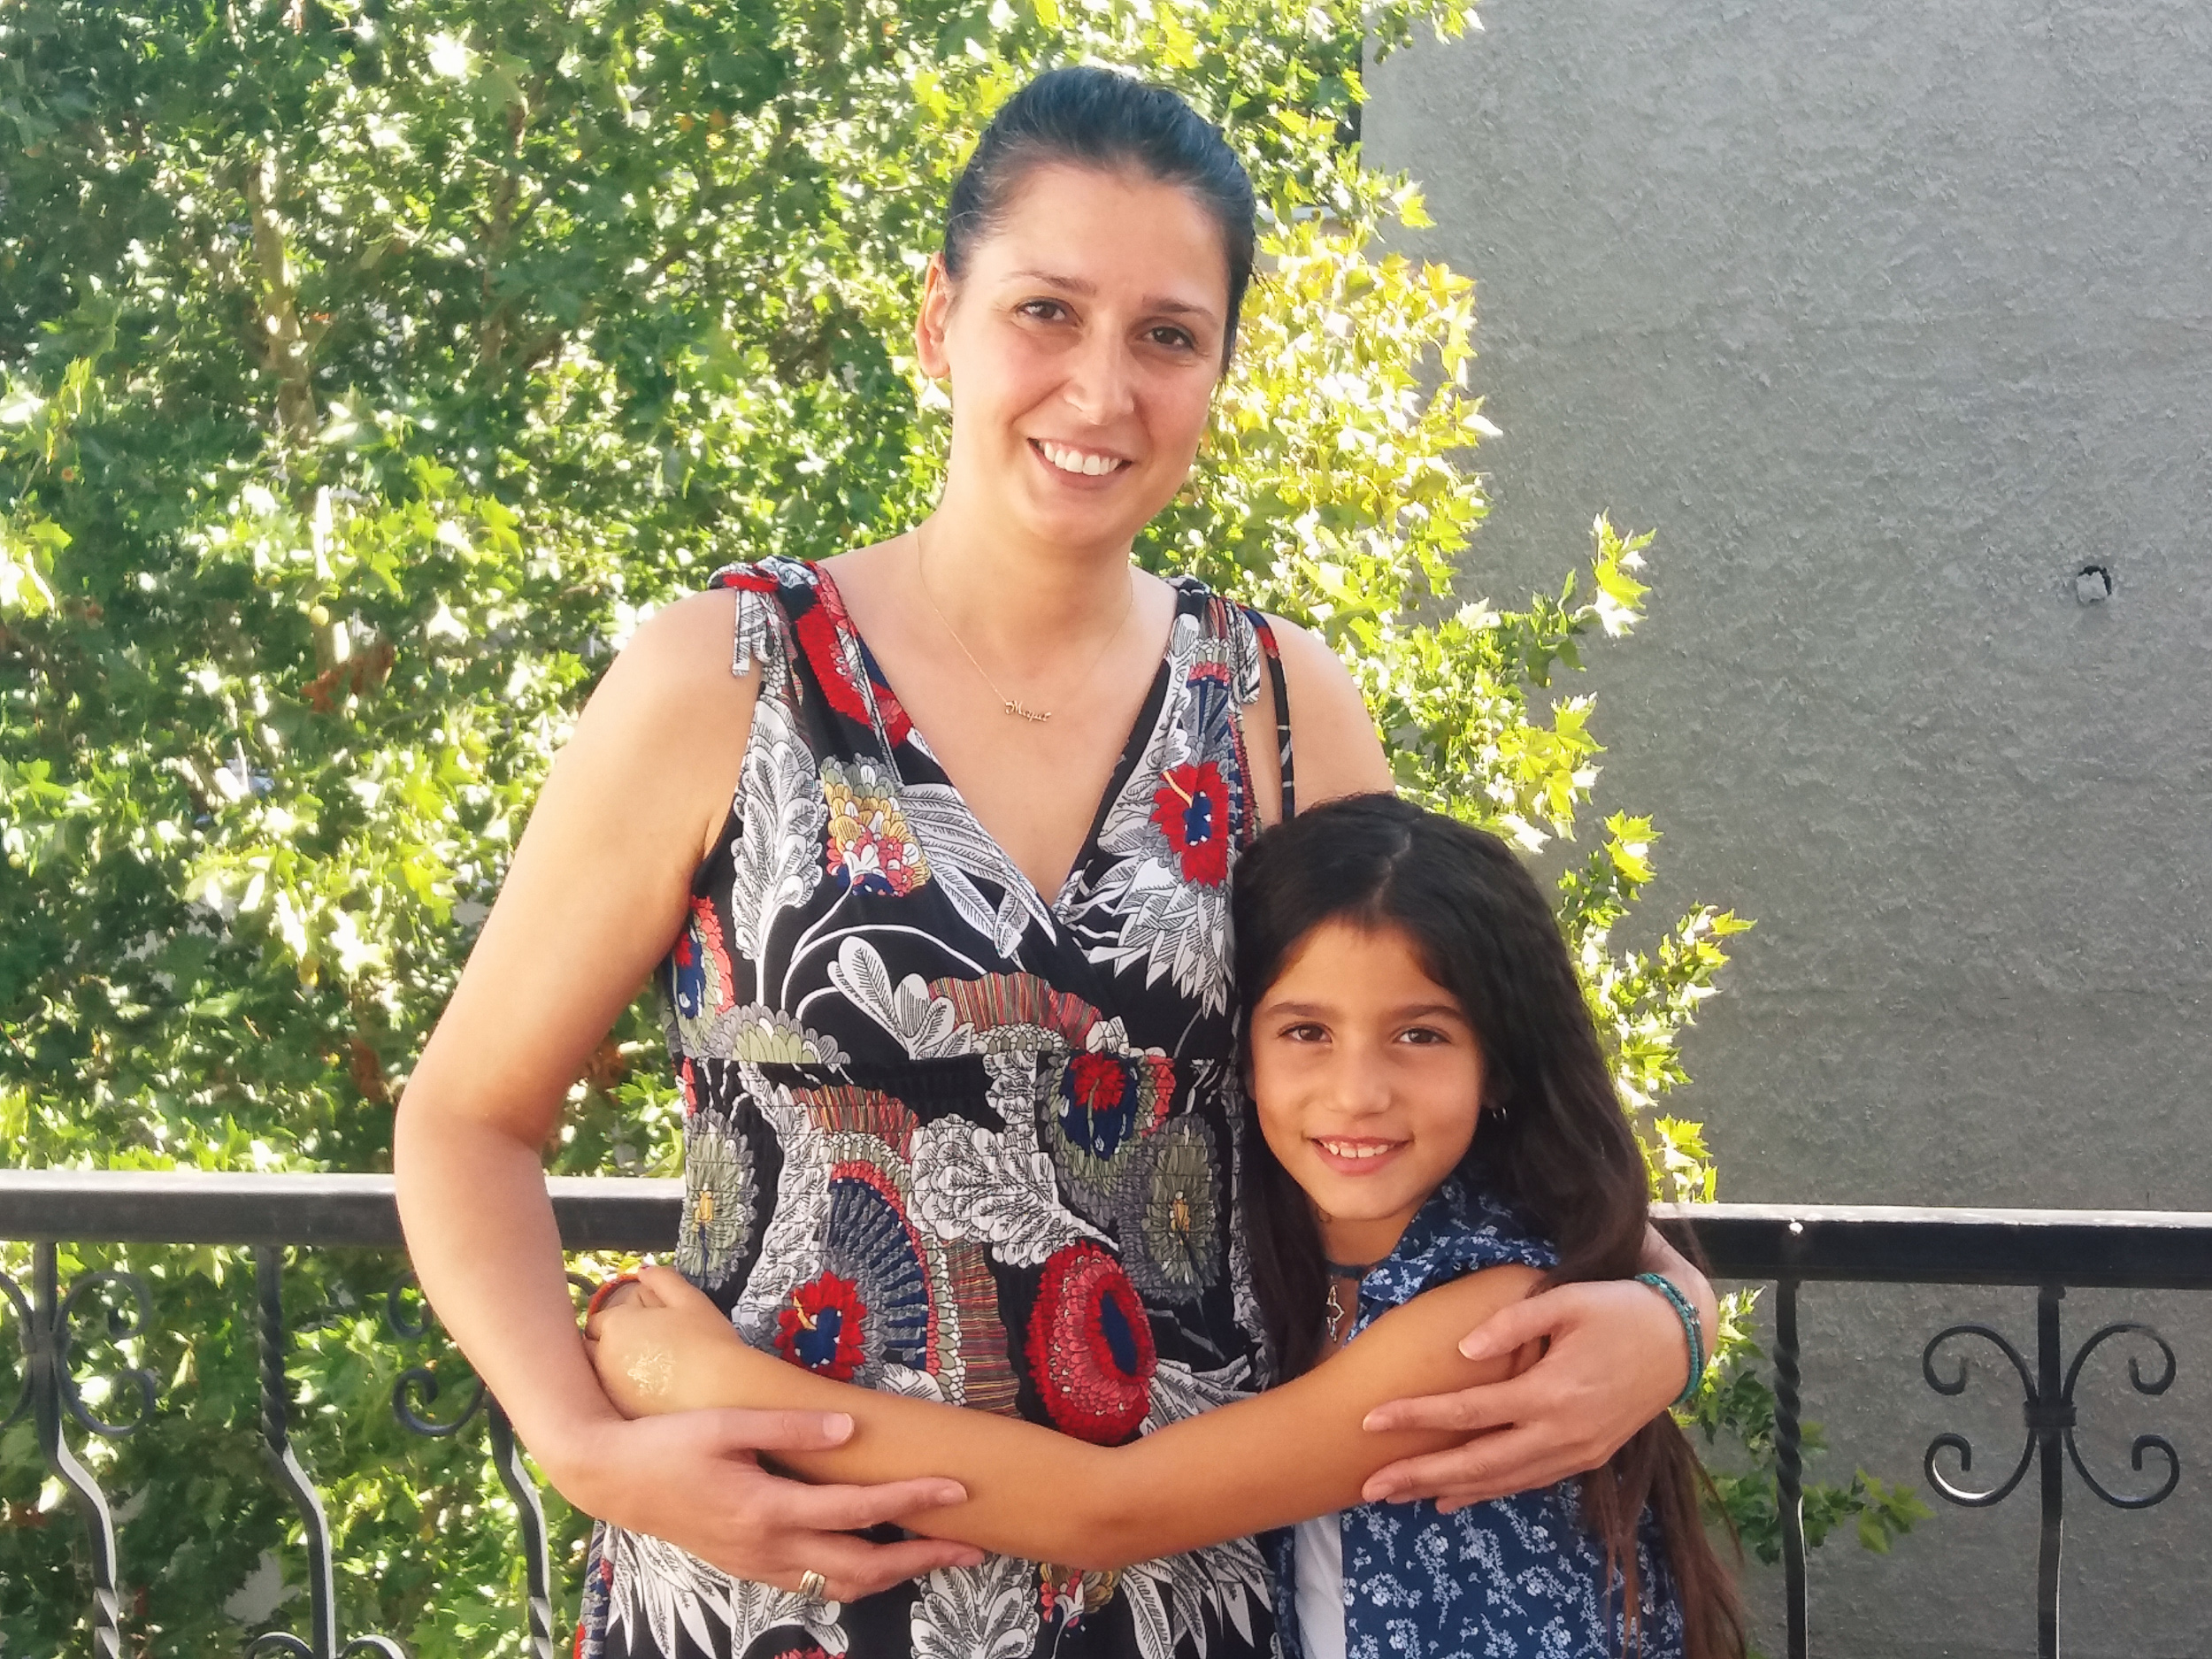 Η 35χρονη Ελισάβετ είναι καρκινοπαθής: «Το μόνο που μου δίνει δύναμη είναι μια αγκαλιά από τα παιδιά μου»